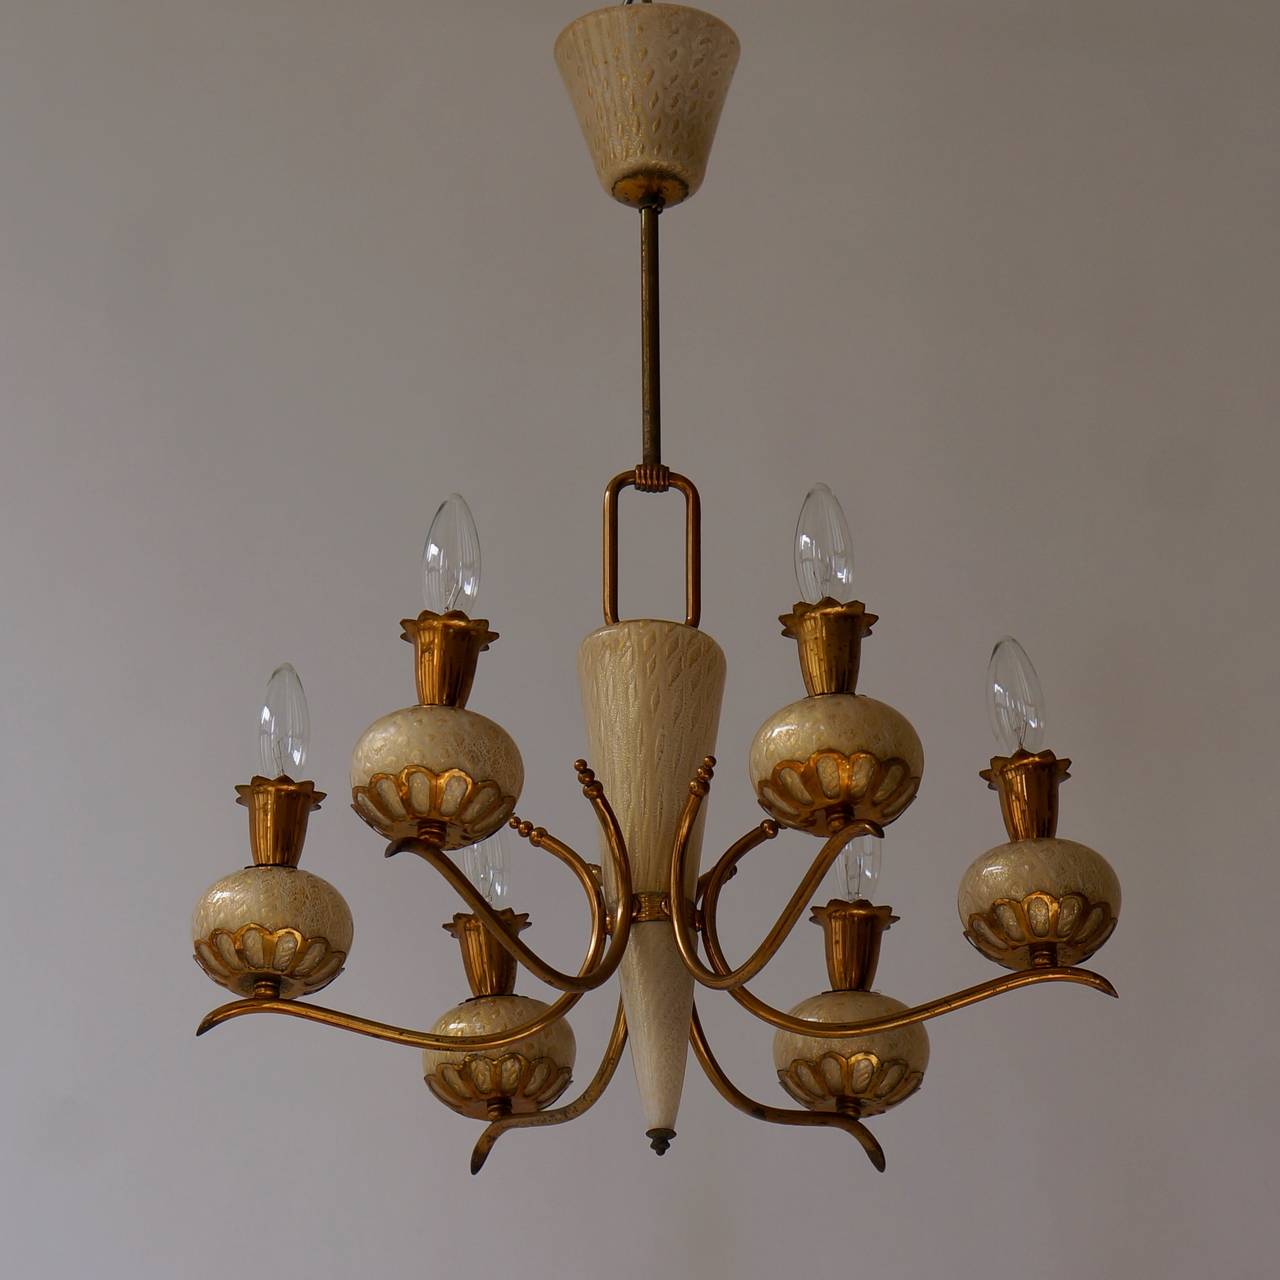 Elegant et charmant lustre exquis en verre de Murano soufflé à la main Barovier & Torso avec des inclusions d'or. Un lustre à six lumières par Barovier&Toso. 
Accepte six ampoules à petit culot (E-14) jusqu'à 60 watts par ampoule.

Mesures :